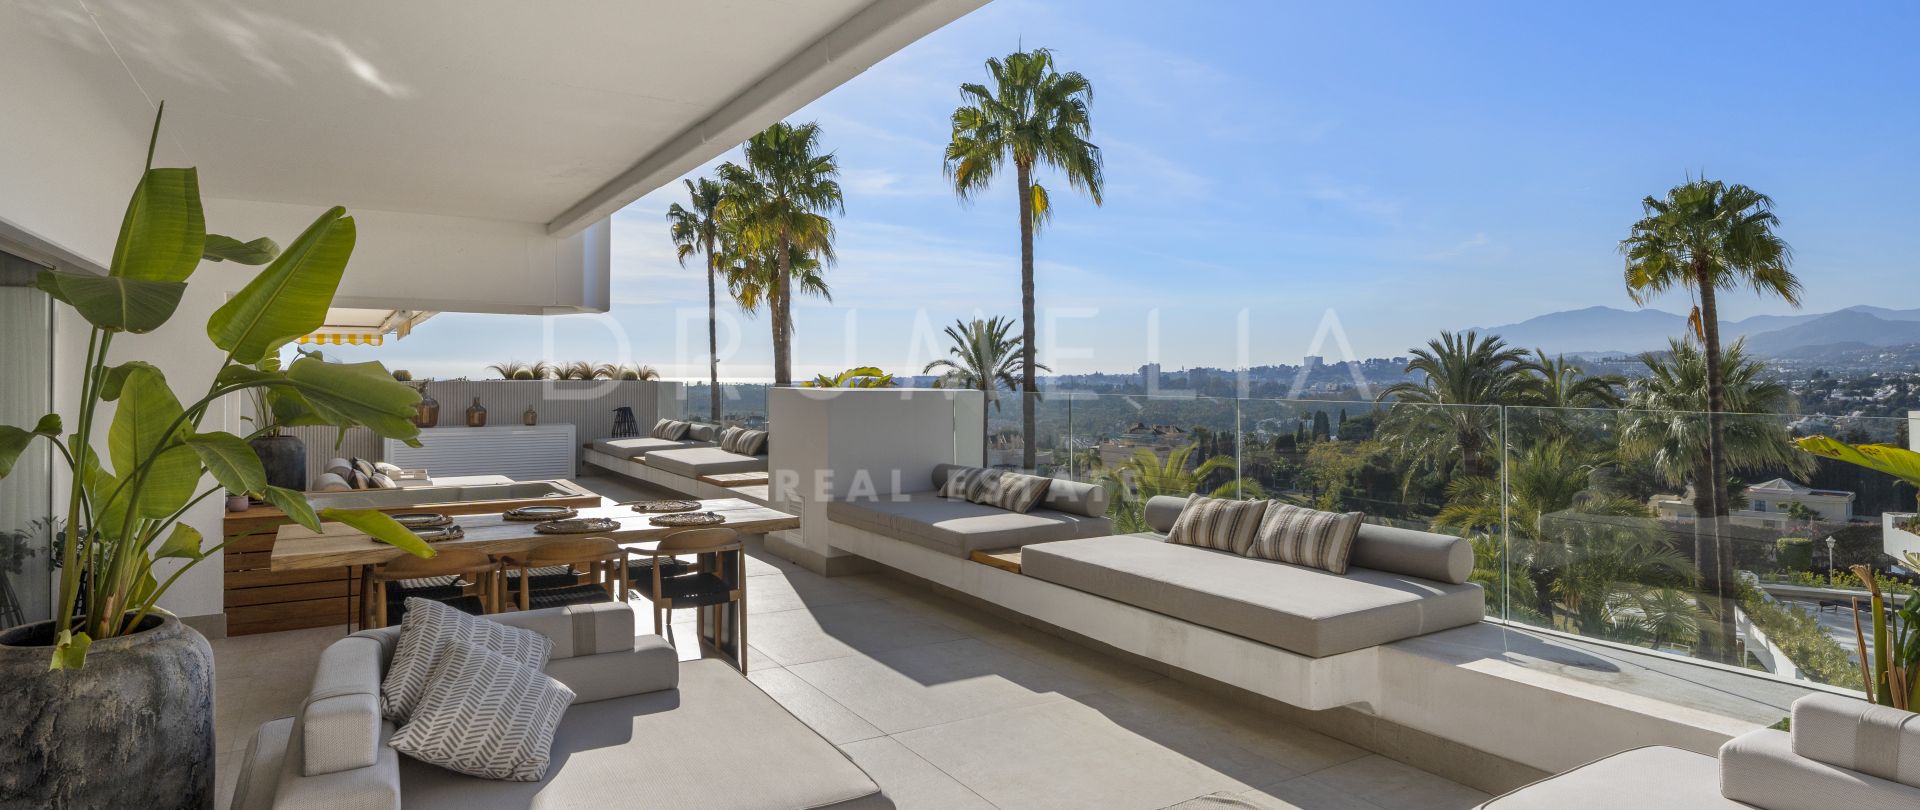 Moderno apartamento de lujo con vistas panorámicas en Las Terrazas, Marbella